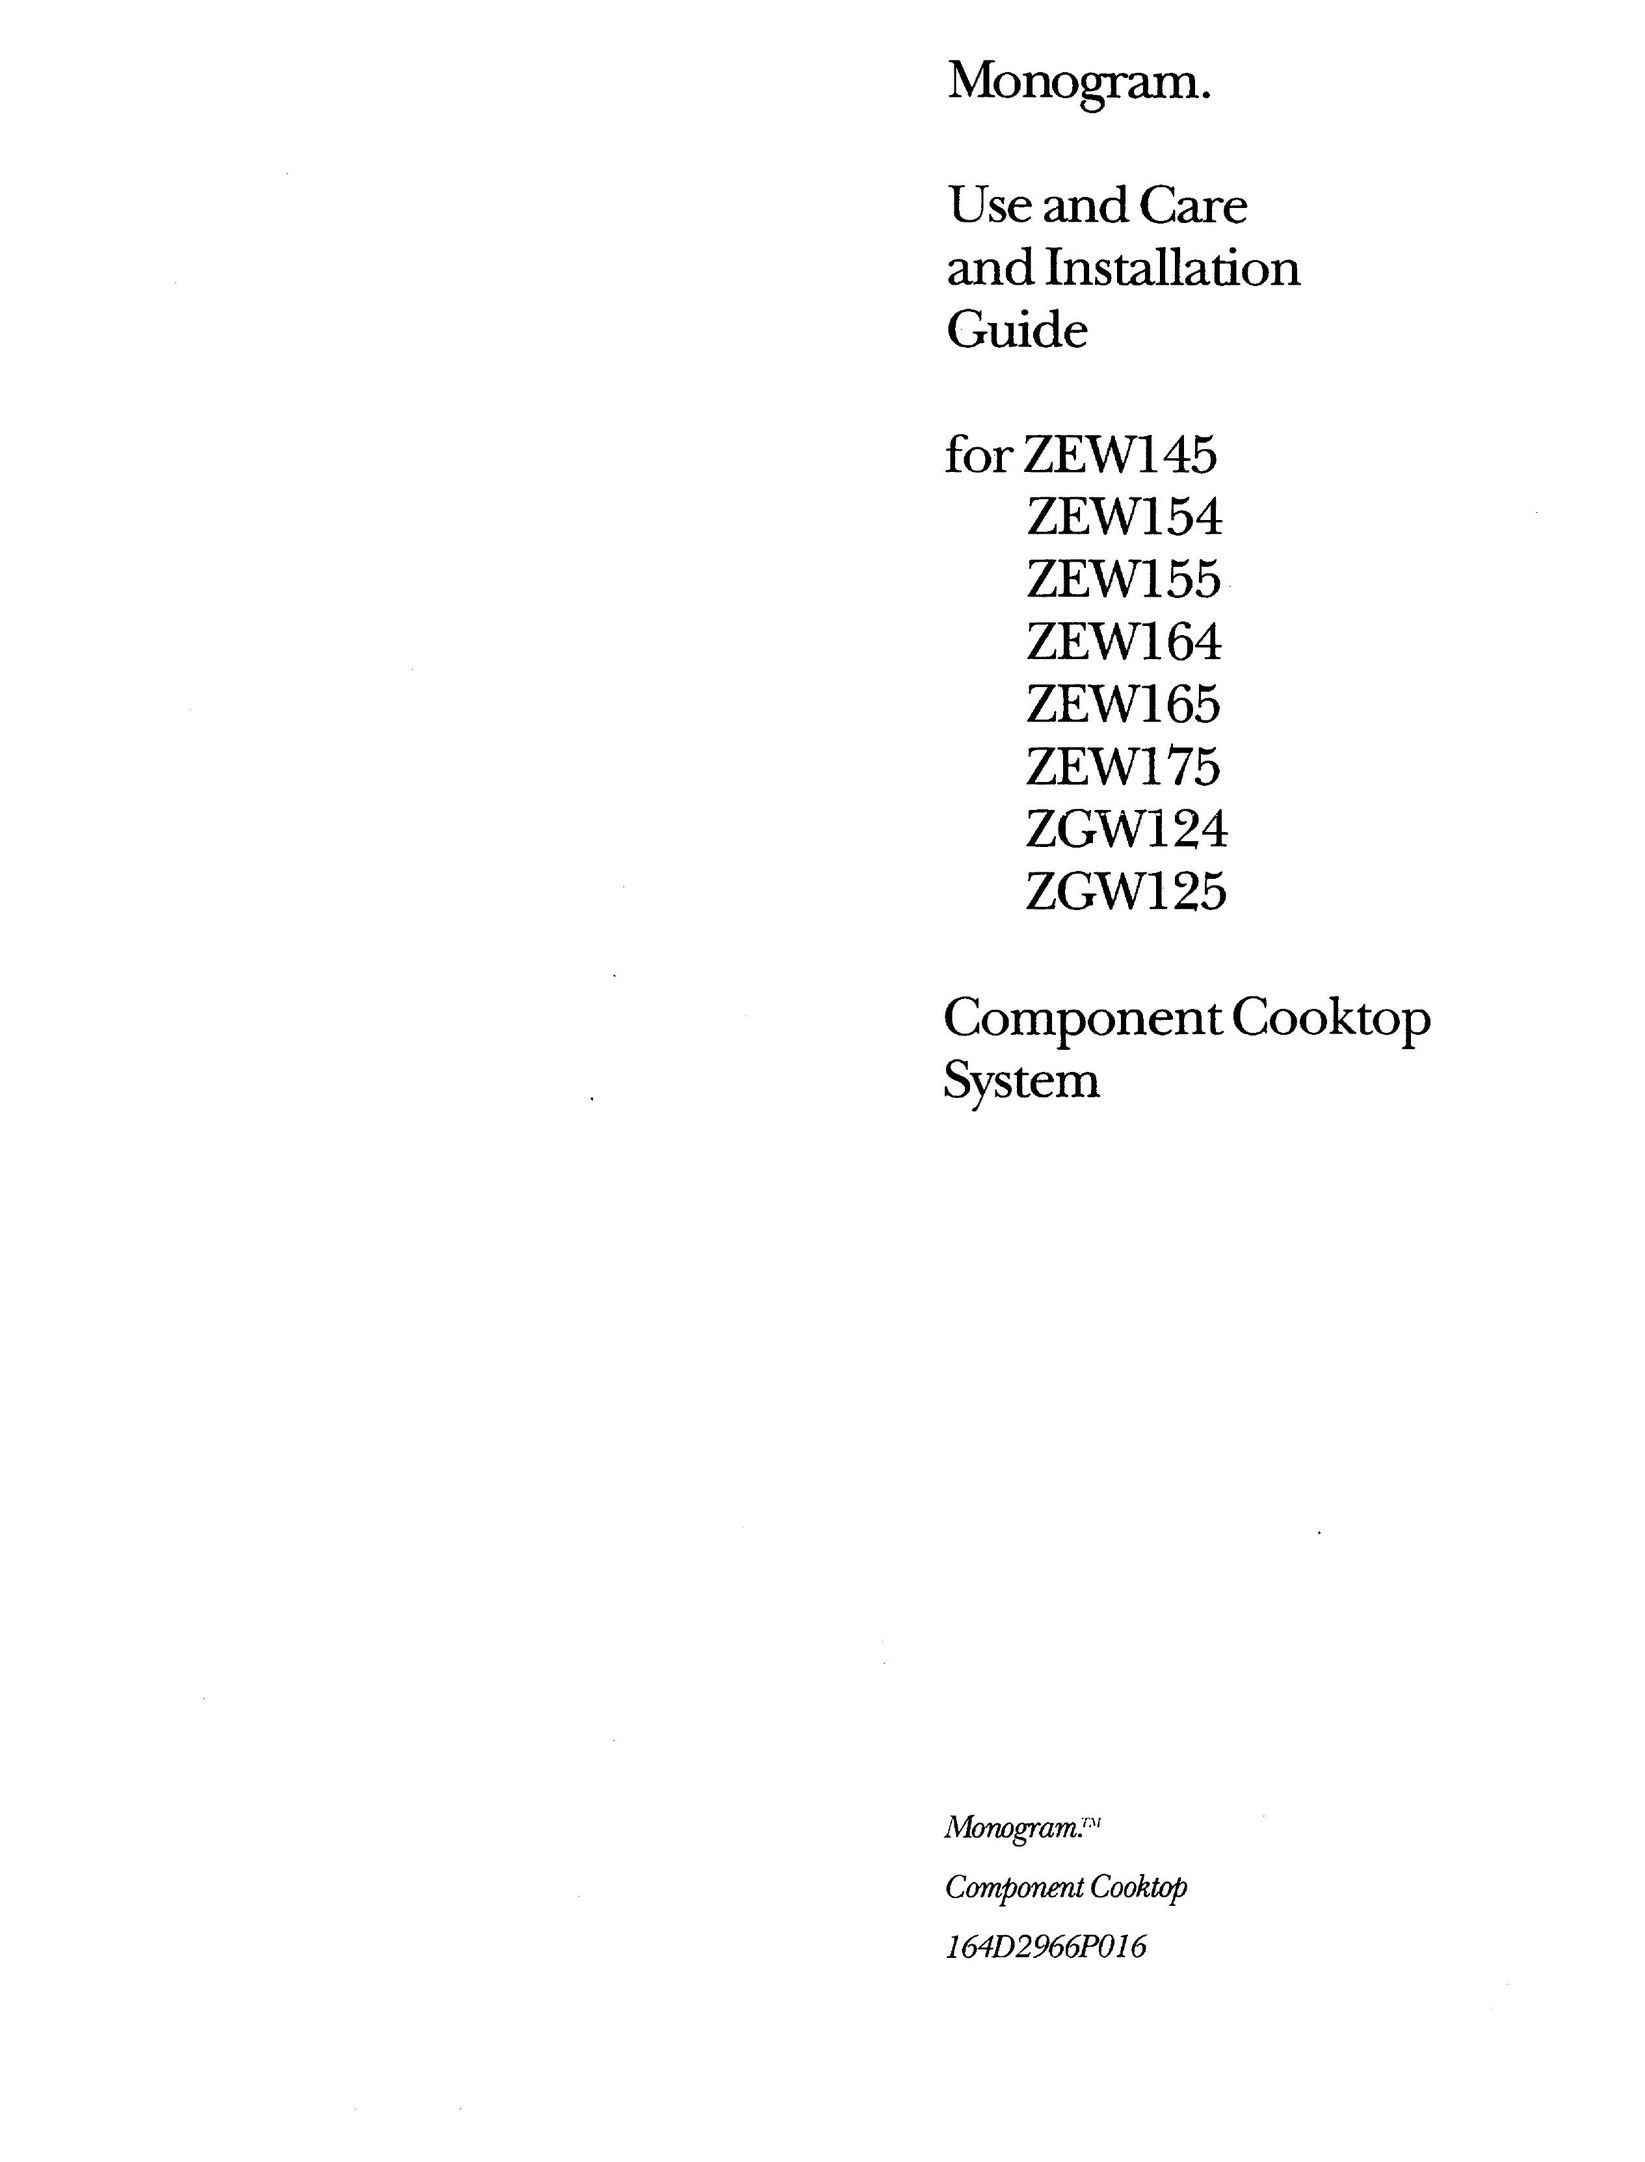 GE Monogram ZEW164 Cooktop User Manual